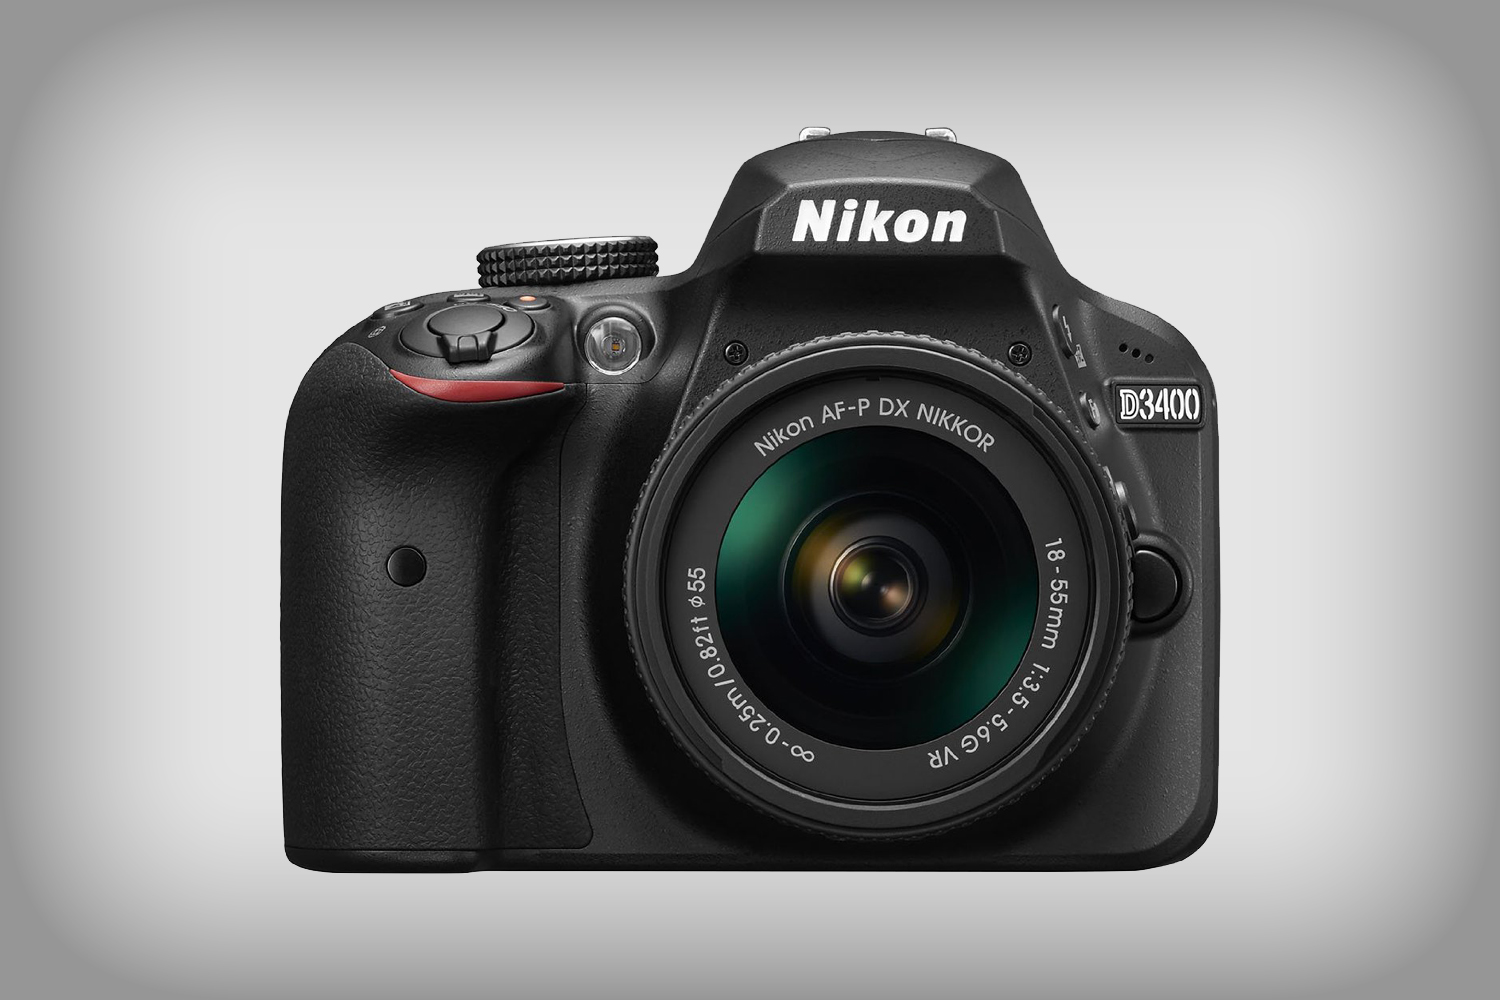 Nikon D3400 DSLR camera